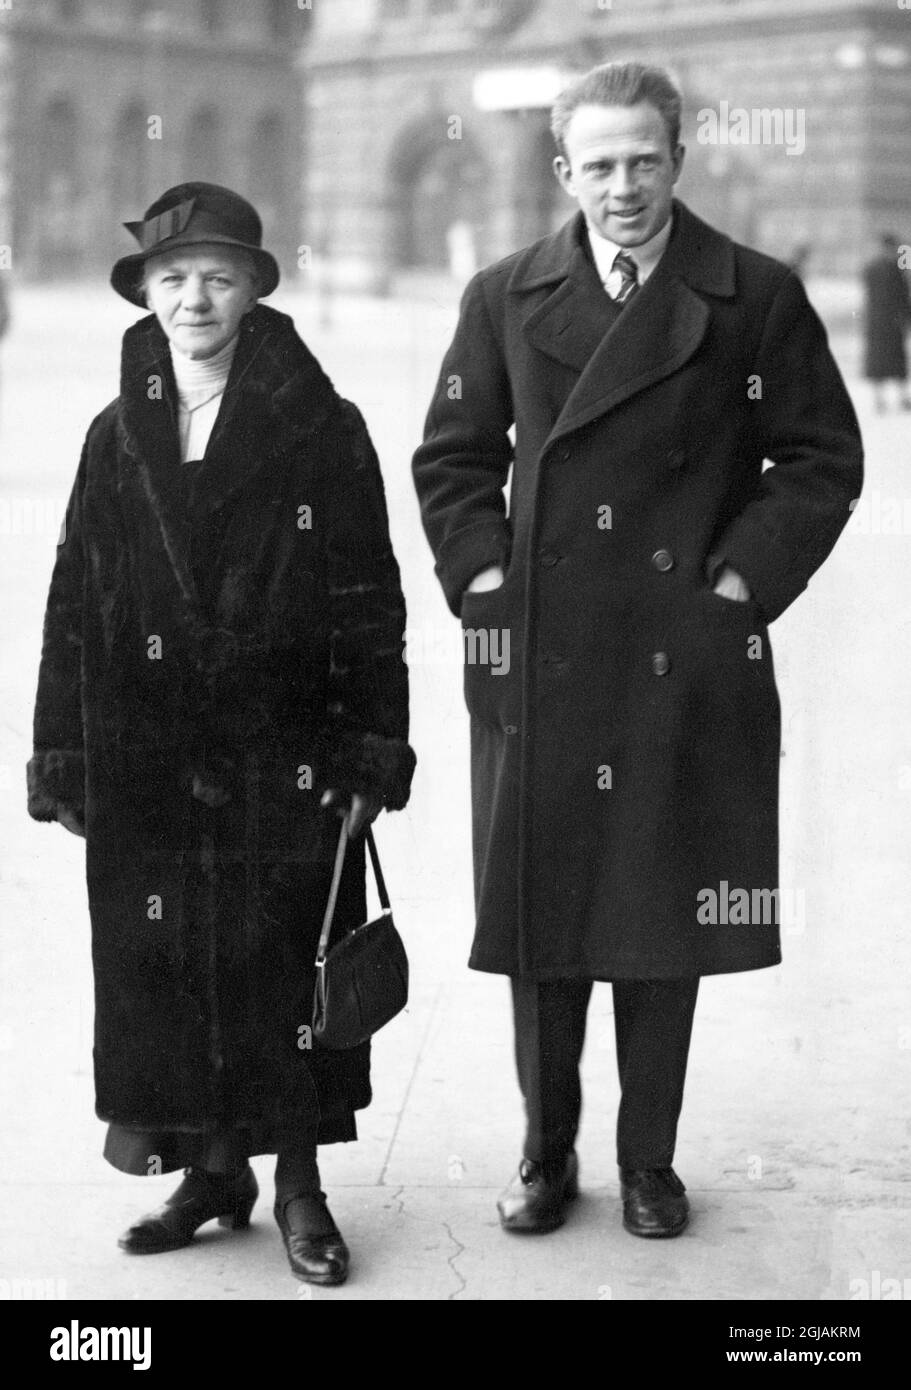 Werner Heisenberg, fisico tedesco che ha ricevuto il Premio Nobel per la fisica 1932 per i suoi contributi di base alla meccanica quantistica, qui con sua madre. Foto Stock